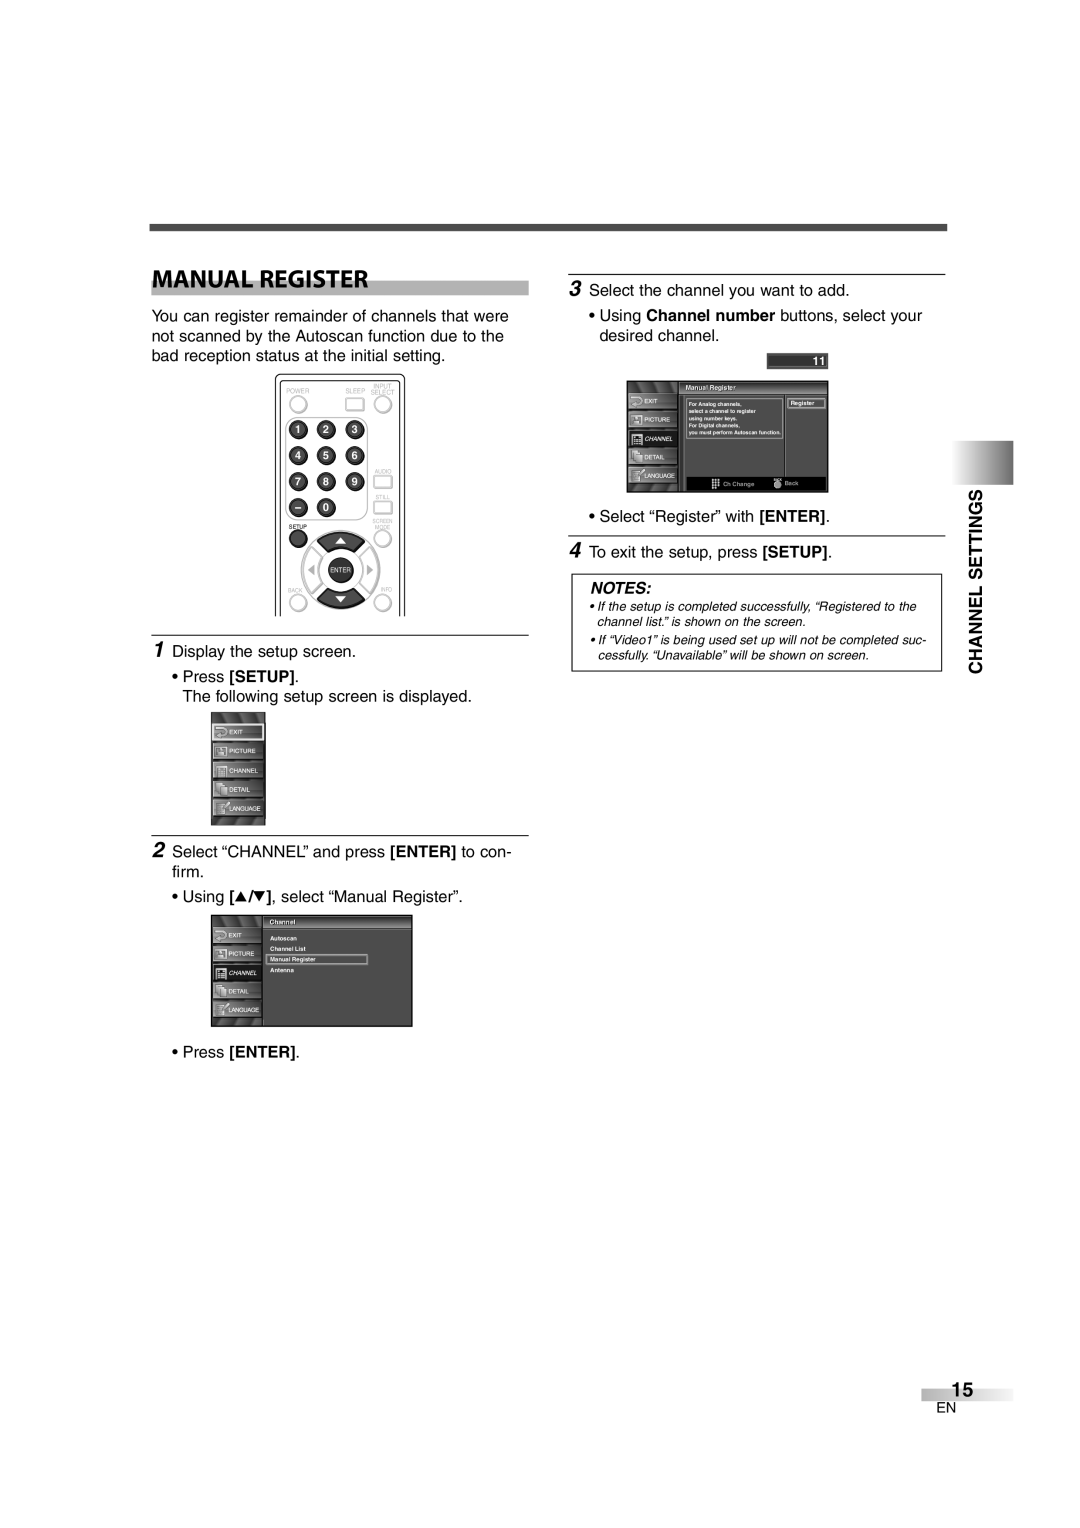 FUNAI CIWL3206 owner manual Manual Register, Channel Settings 